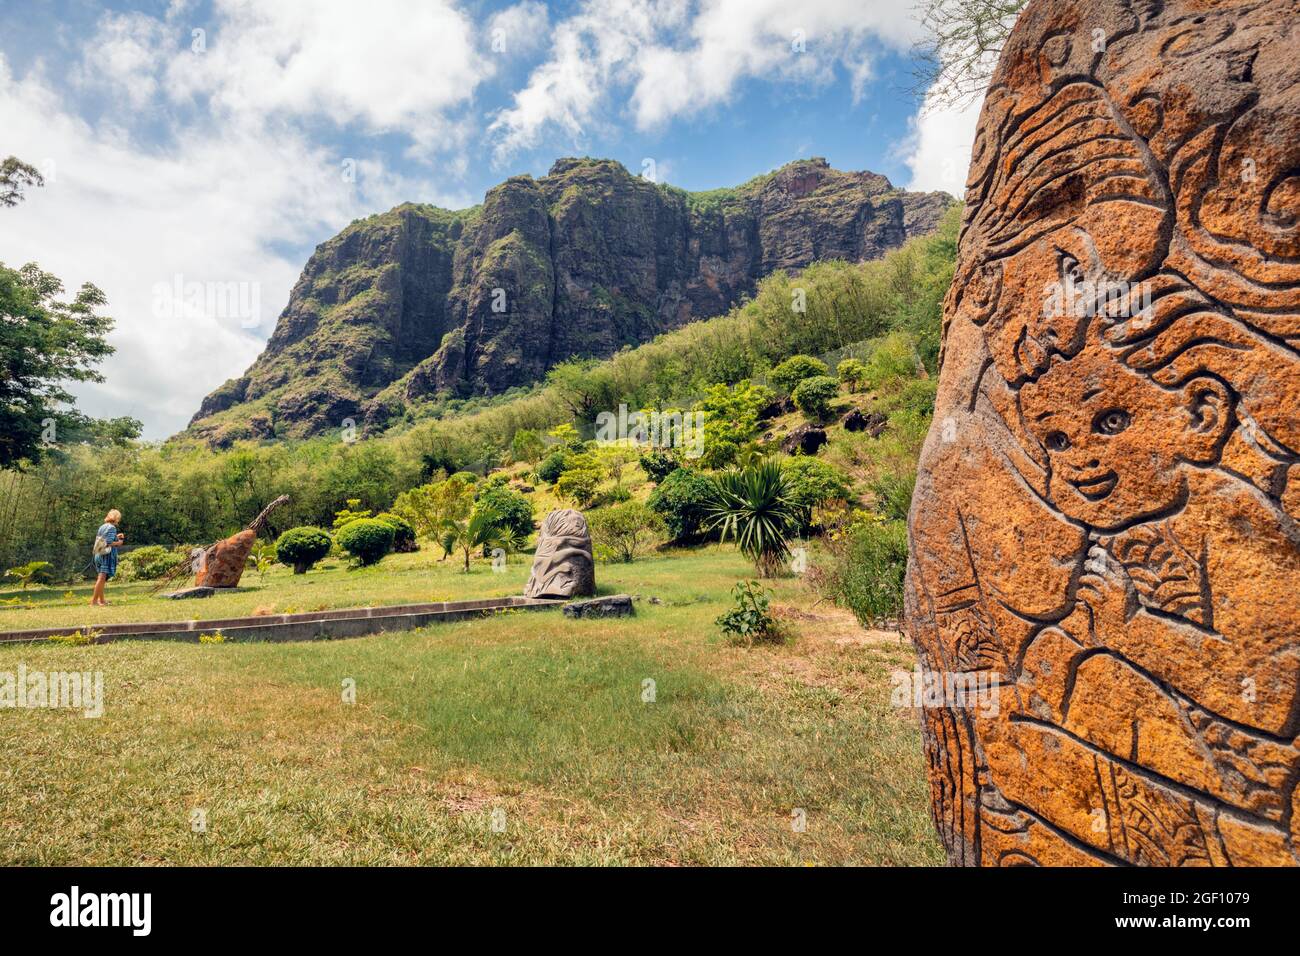 Mauritius, Mascarene-Inseln. Das Denkmal der Sklavenstraße am Fuße des Berges Le Morne Brabant. Der Berg wurde von entflohenen Sklaven als Zufluchtsort genutzt. Stockfoto